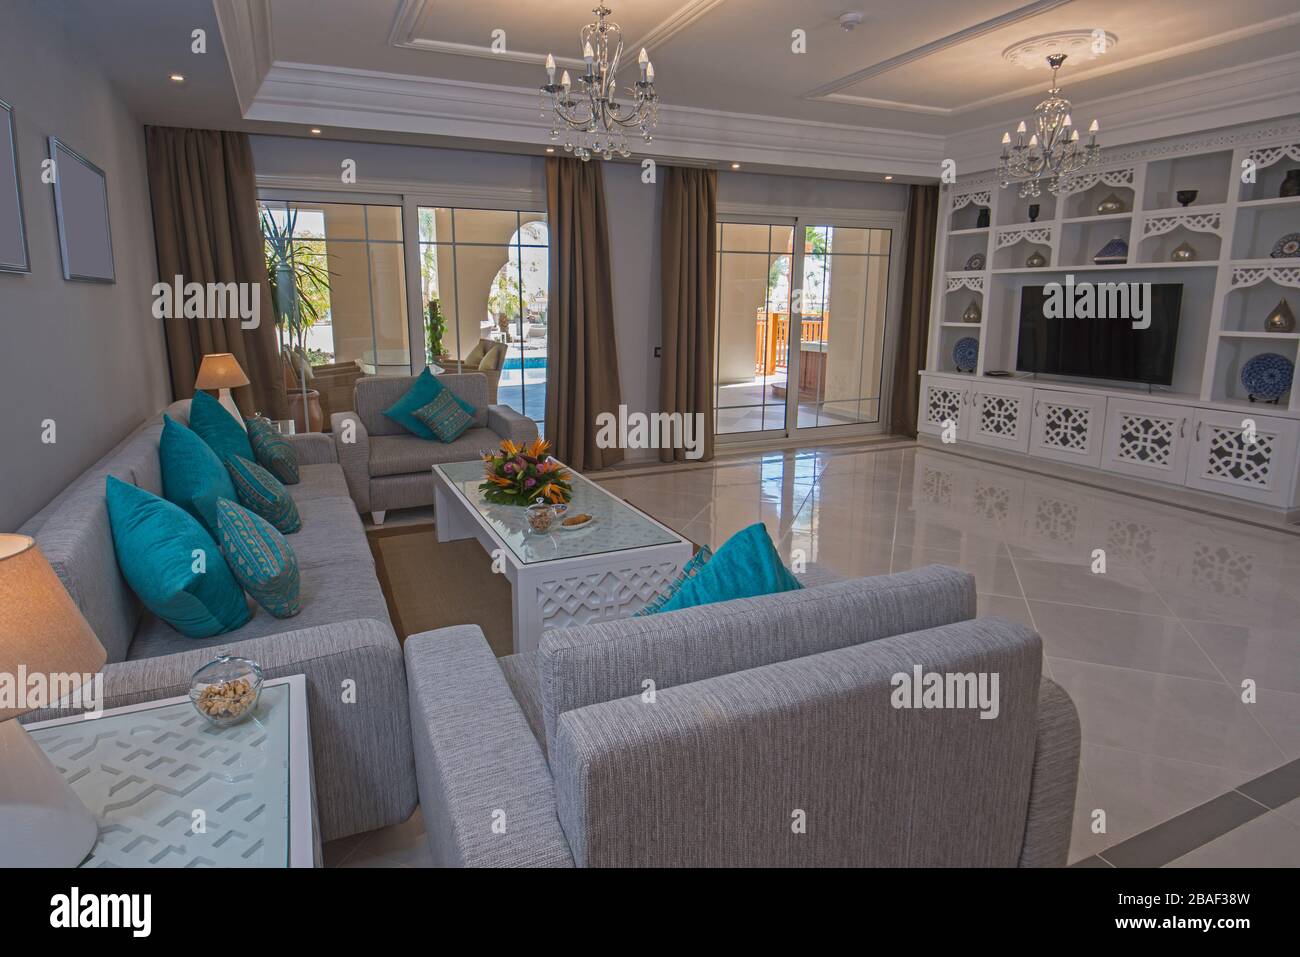 Salon salon dans villa de vacances de luxe montrer la maison montrant décoration intérieure ameublement et terrasse extérieure Banque D'Images